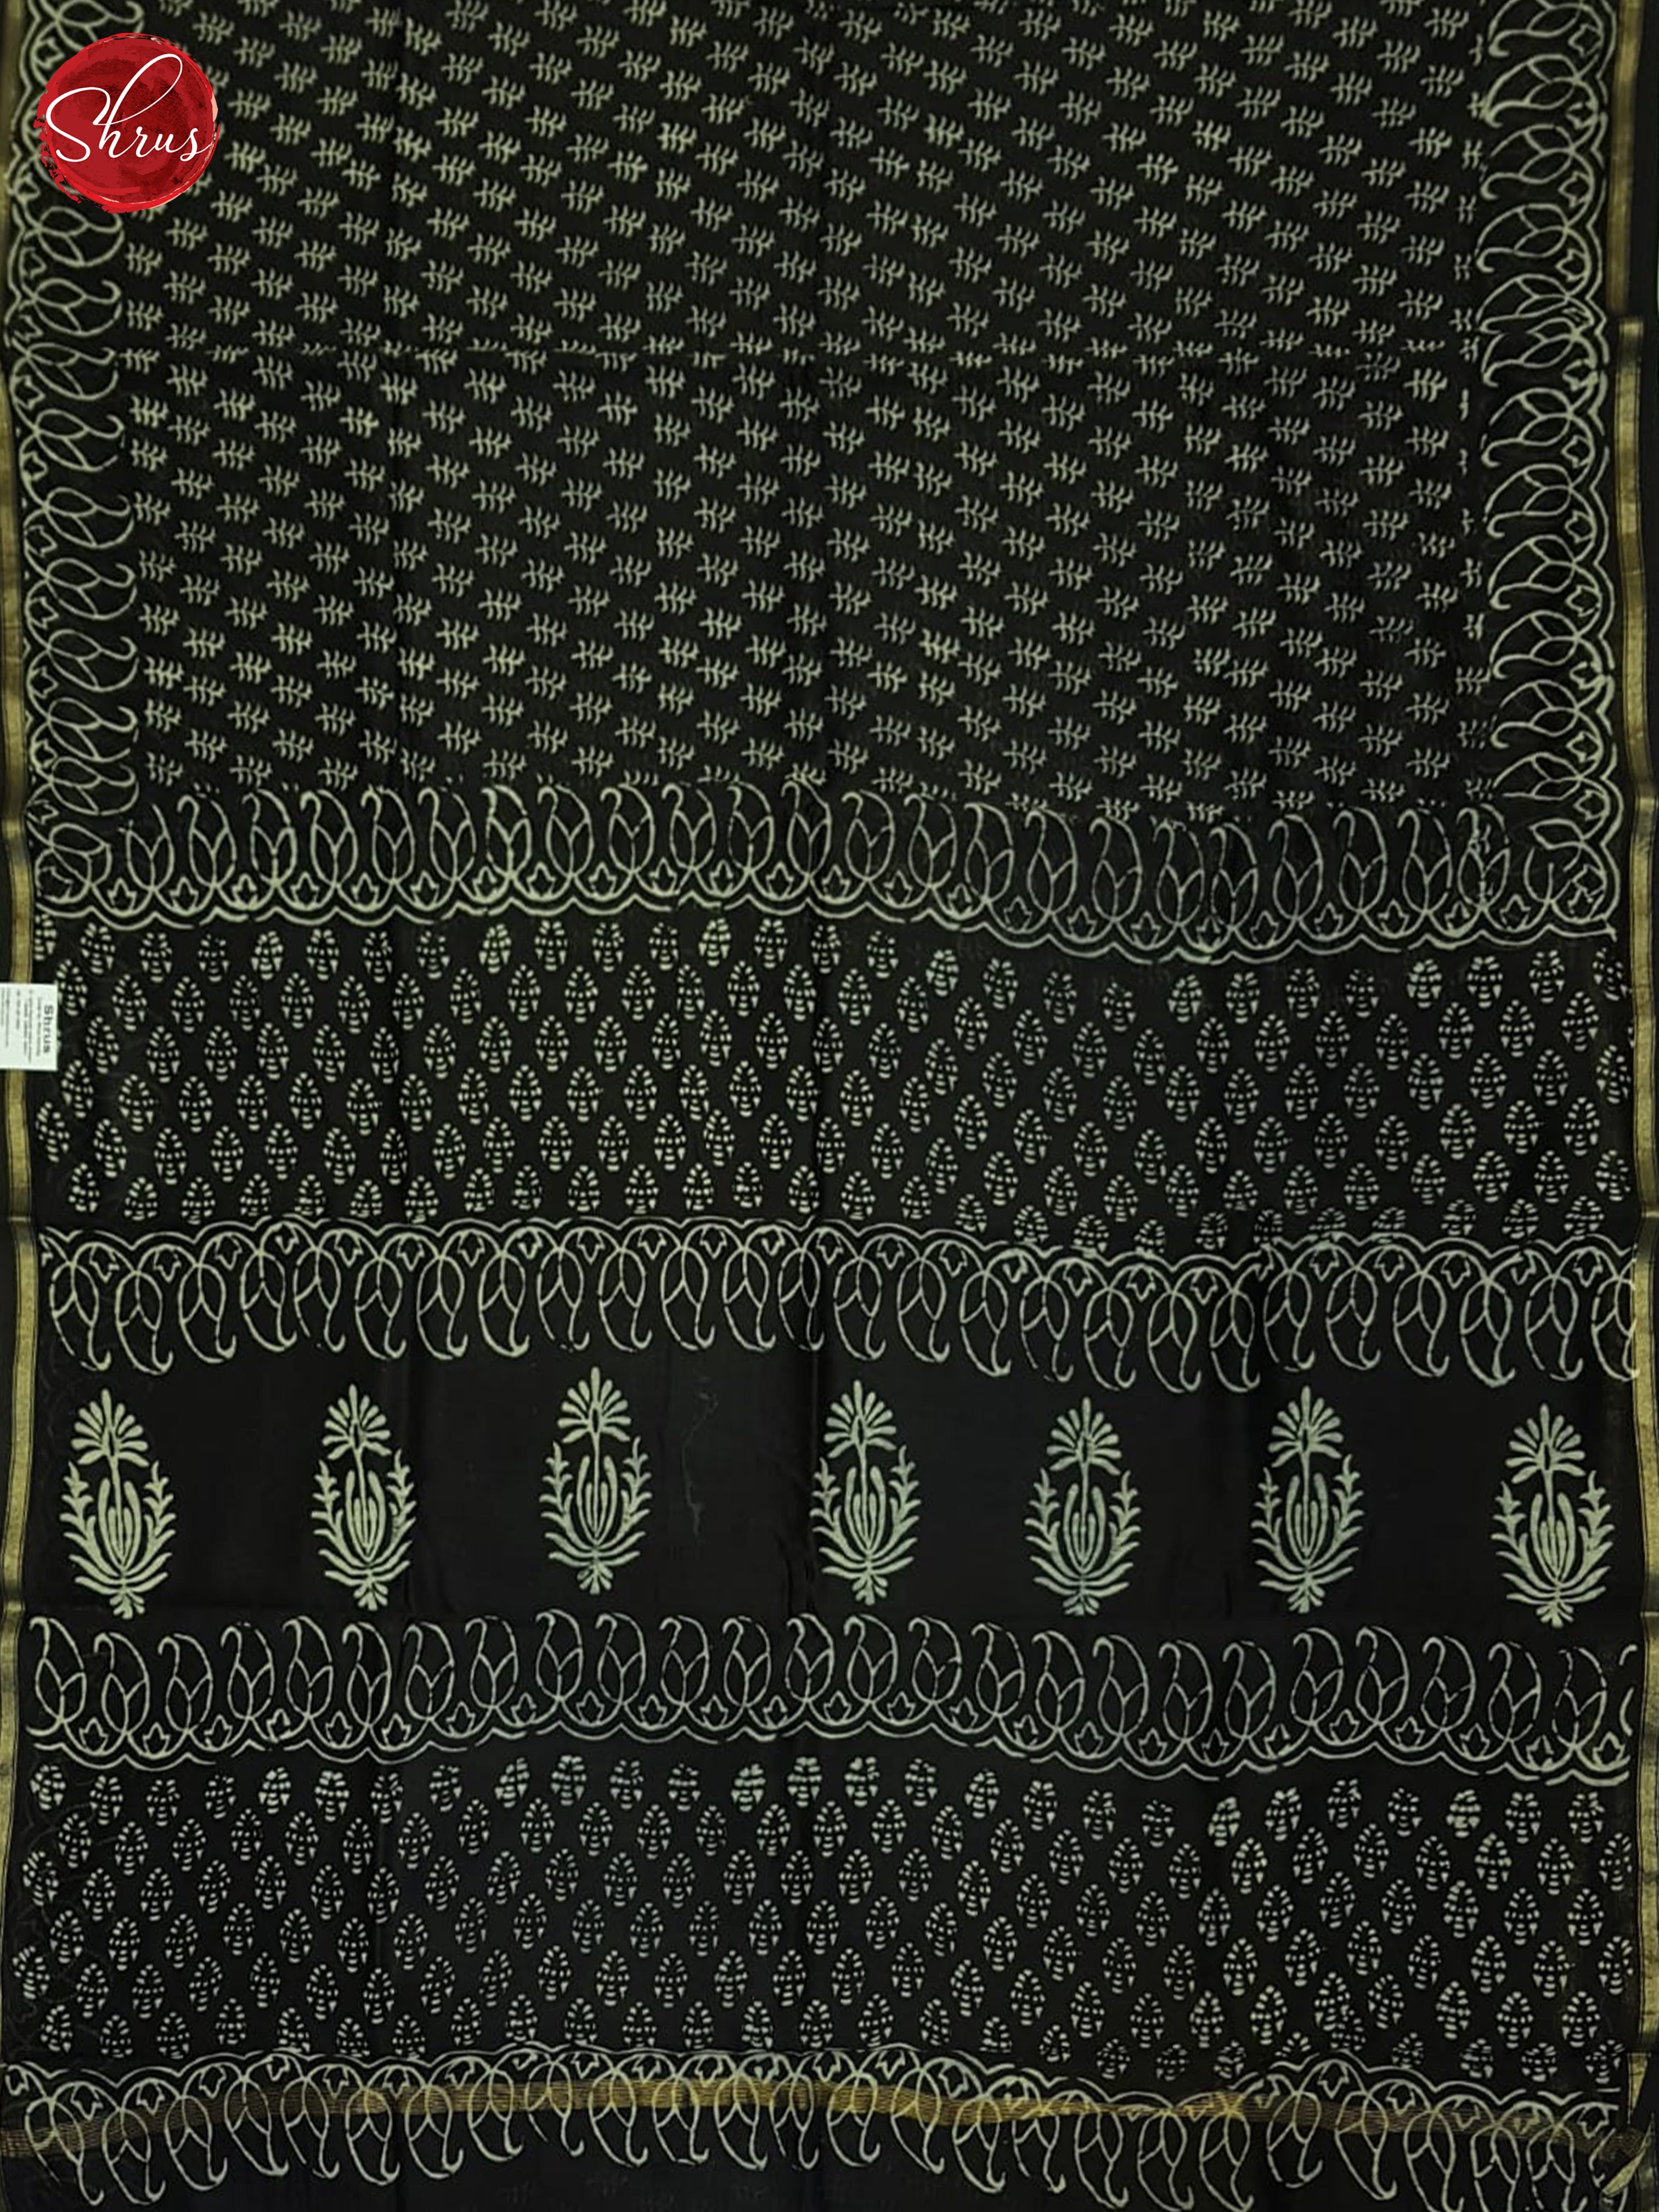 Black(Single Tone)- Maheshwari Silk Cotton Saree - Shop on ShrusEternity.com